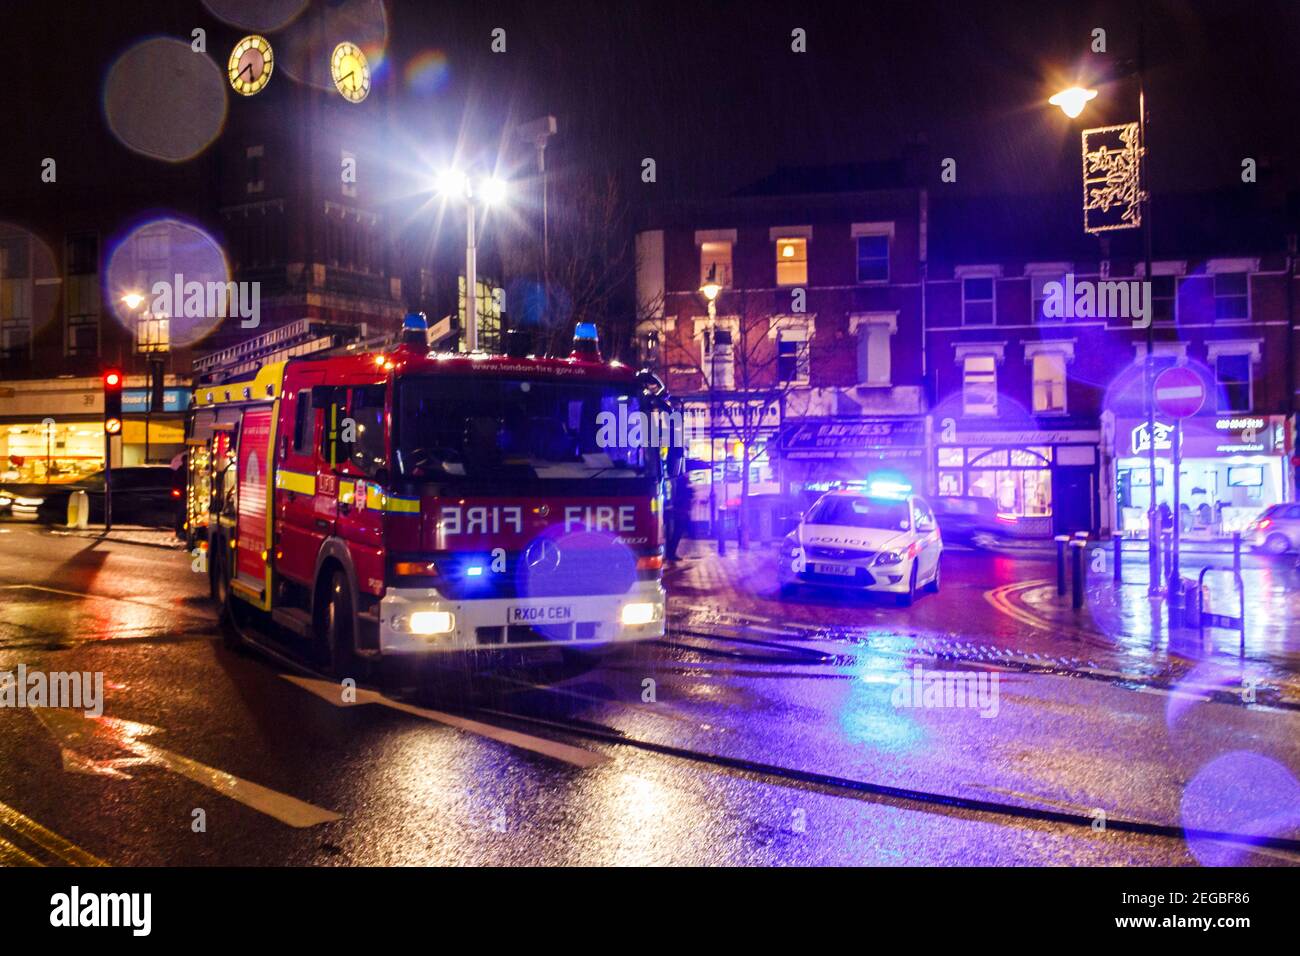 Une voiture de police et une voiture de pompiers assistant à un incident lors d'une nuit d'hiver à Crouch End, Londres, Royaume-Uni Banque D'Images